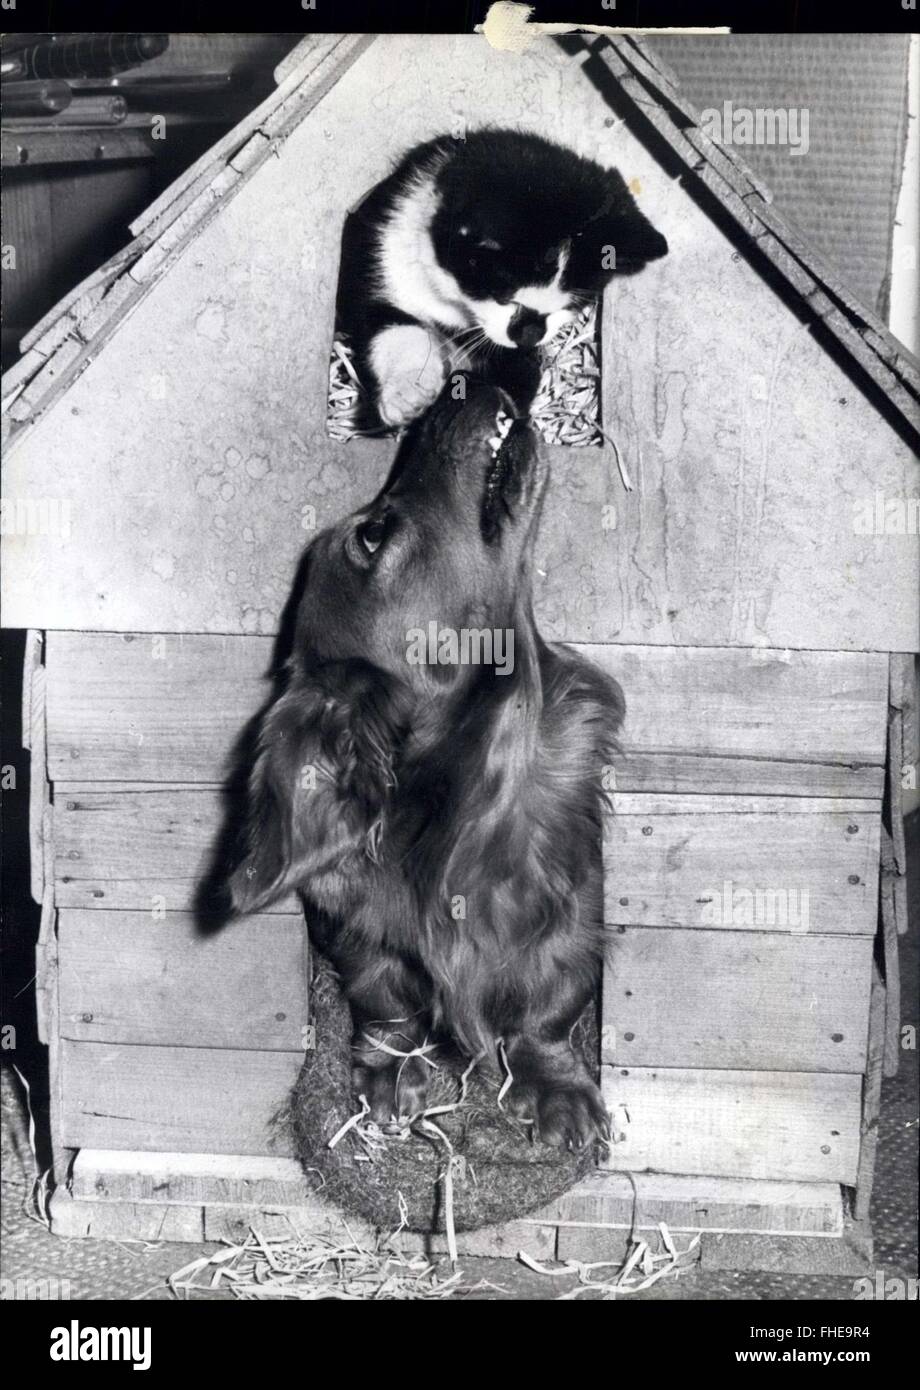 1966 - in der Hundehütte - und mag es! : Mohrle ist eine Katze, die sicherlich nichts dagegen nicht in der Hundehütte. Denn er ist ein großer Freund des Hundes, Sohnappie. Beide Tiere sind die Haustiere von einer deutschen Familie, die in Furstenfeldbruch, in der Nähe von München - leben, und es scheint, dass Schnappie einen Weg mit Katzen, für Mohrle seine zweite Katze Freund ist. Die Familie erste Katze wurde von einem Auto getötet, und Schnappie weigerte sich zu essen, mit Trauer über den Verlust seines Freundes - Sehnsucht, so dass die Familie nach einer anderen Katze gesucht, die Toten aussah. Schließlich fanden sie Mohrle, wer zuerst aß, war unsicher, ob oder nicht Sie Befr Stockfoto